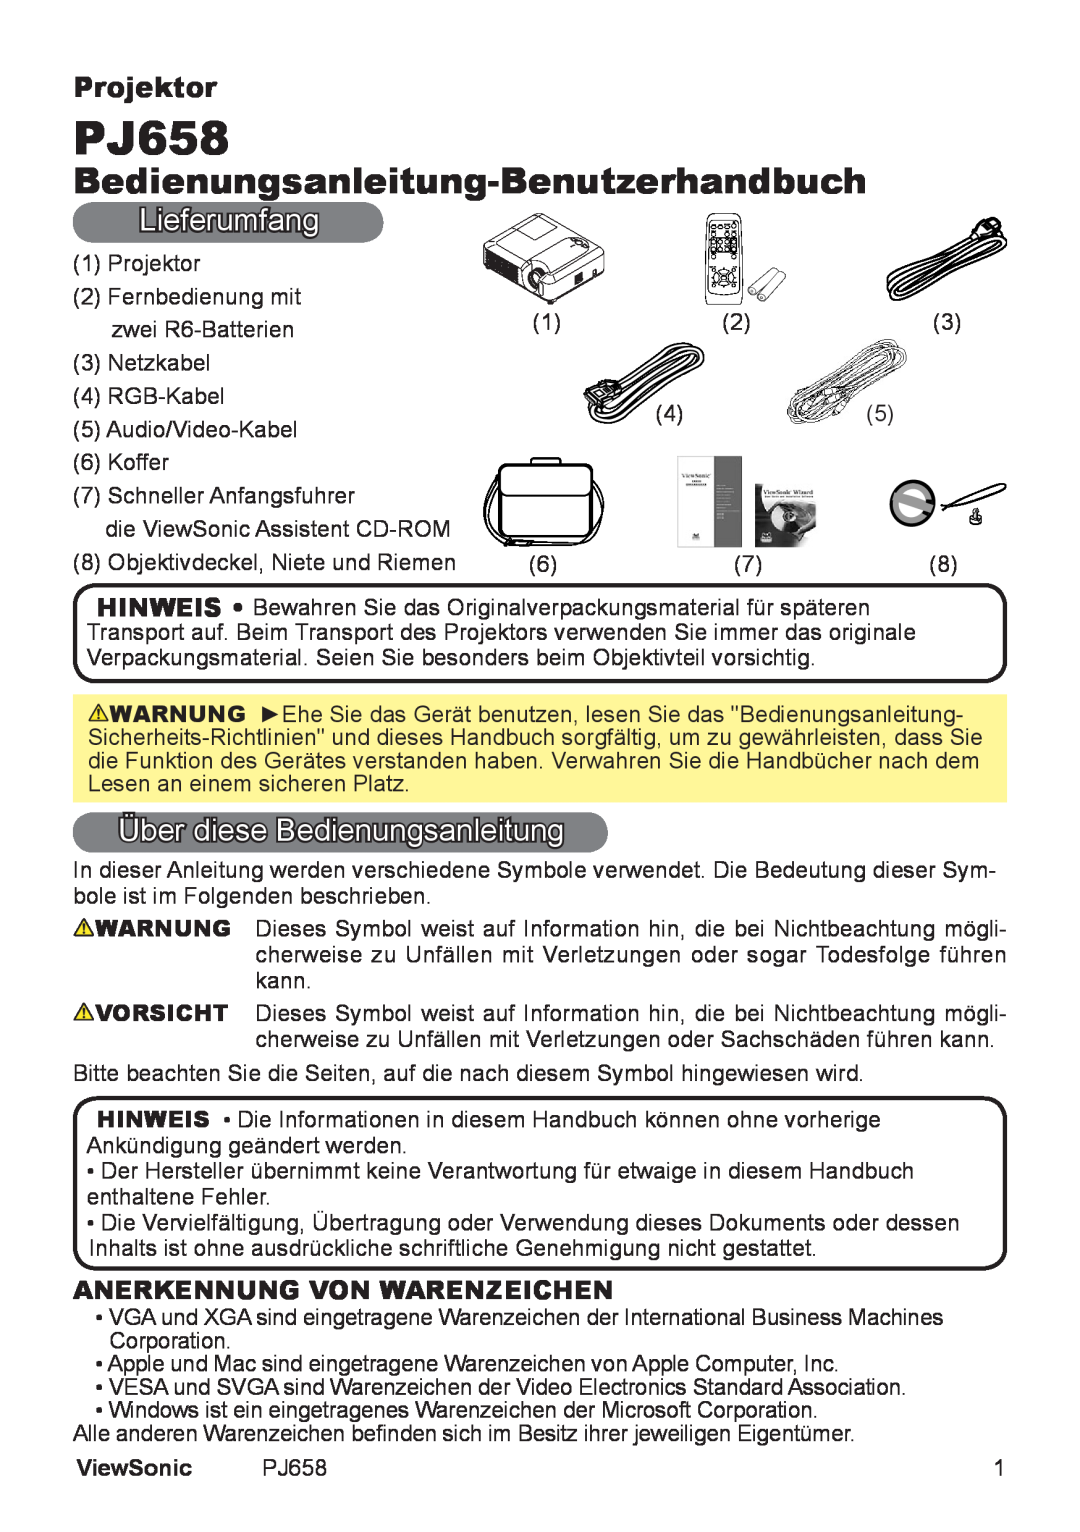 ViewSonic VS11361 Bedienungsanleitung-Benutzerhandbuch, Lieferumfang, Über diese Bedienungsanleitung, Projektor, PJ658 